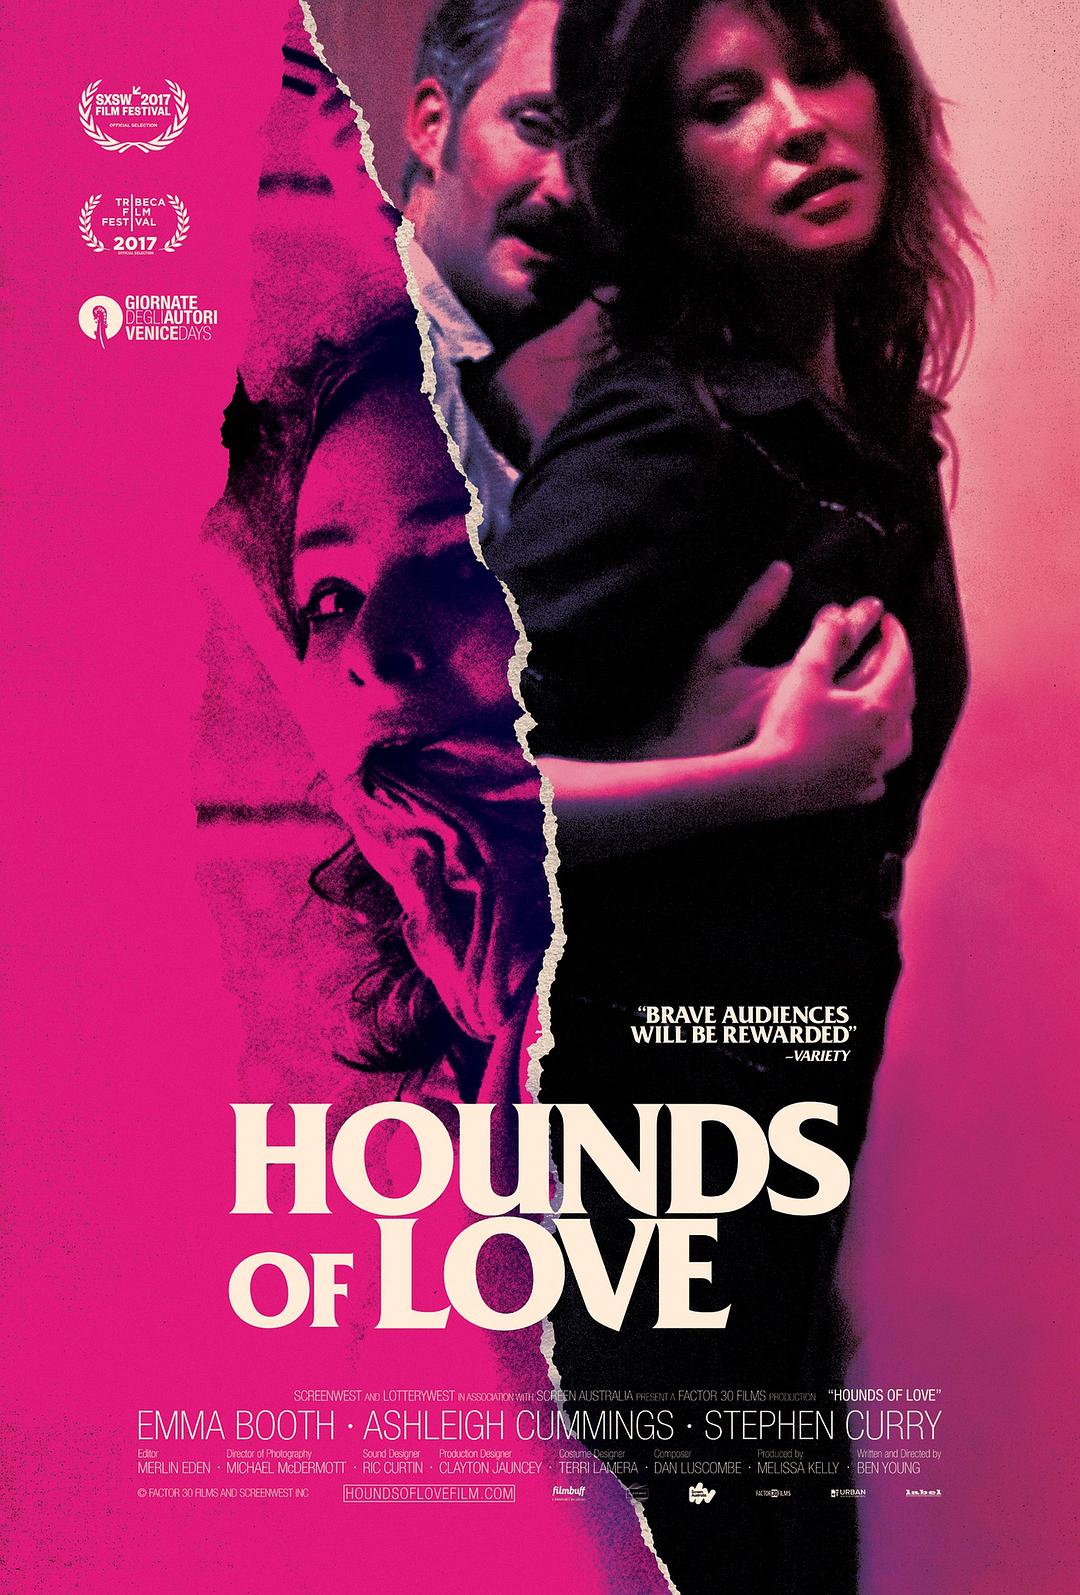 爱的猎犬.Hounds.of.Love.2016.BluRay.1080i.DTS-HD.MA.5.1.AVC.REMUX-FraMeSToR 18.48GB